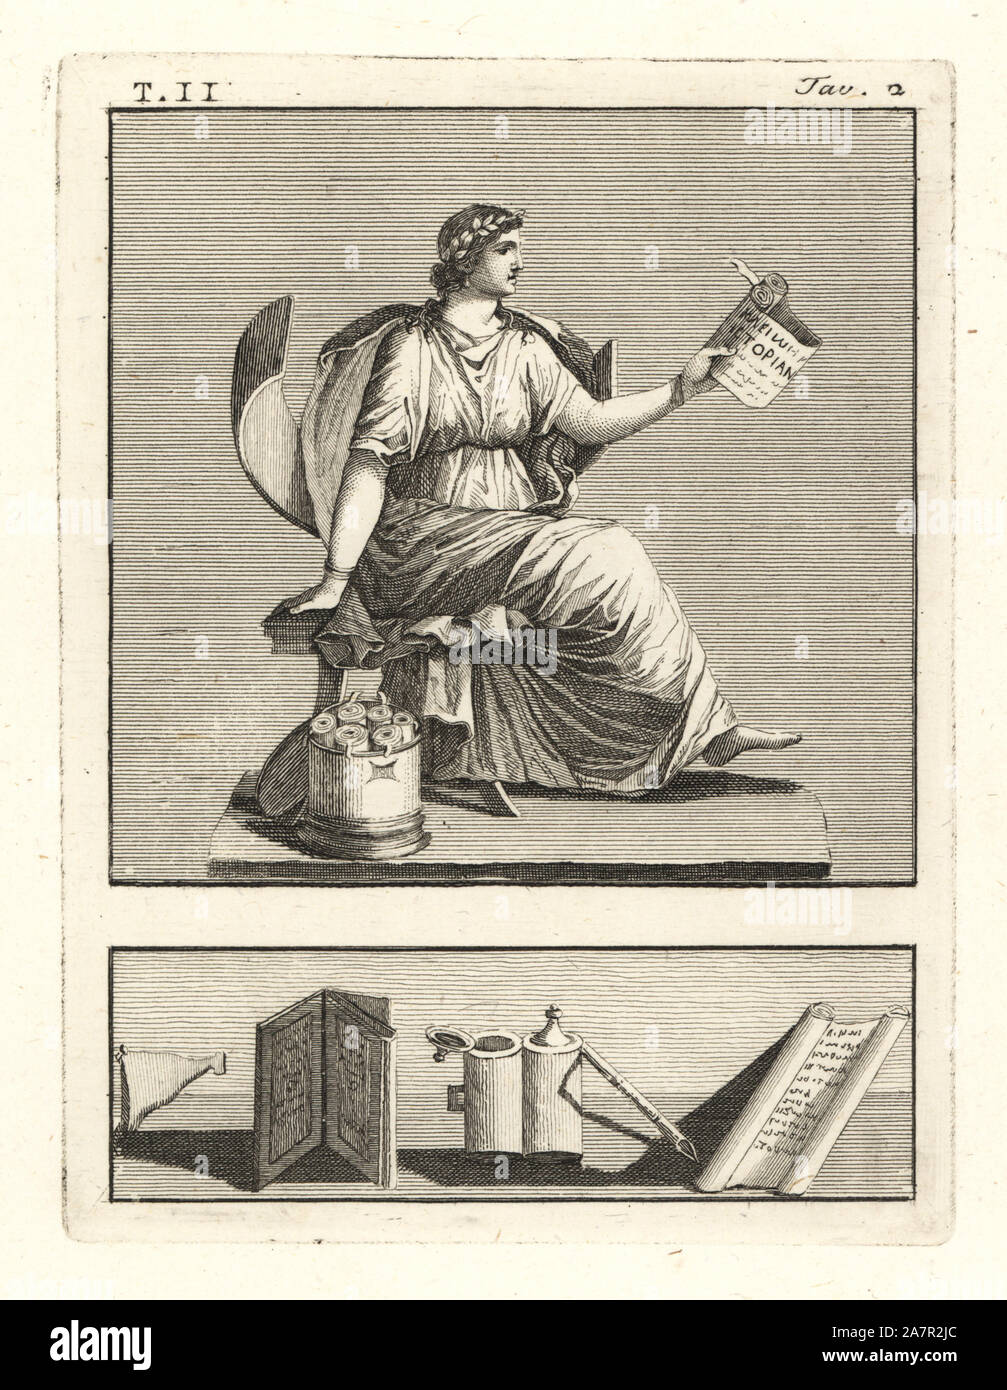 Clio, muse de l'histoire romaine, la lecture d'un parchemin. Elle porte une couronne de laurier, est assis sur une chaise au-dessus d'un Cassettino Cilindrico cylindrique (canon) des parchemins marqués avec dossier (balise pour indiquer le titre ou l'auteur). La gravure sur cuivre par Tommaso Piroli de ses antiquités de Herculanum (Antichita di Ercolano), Rome, 1789. Banque D'Images